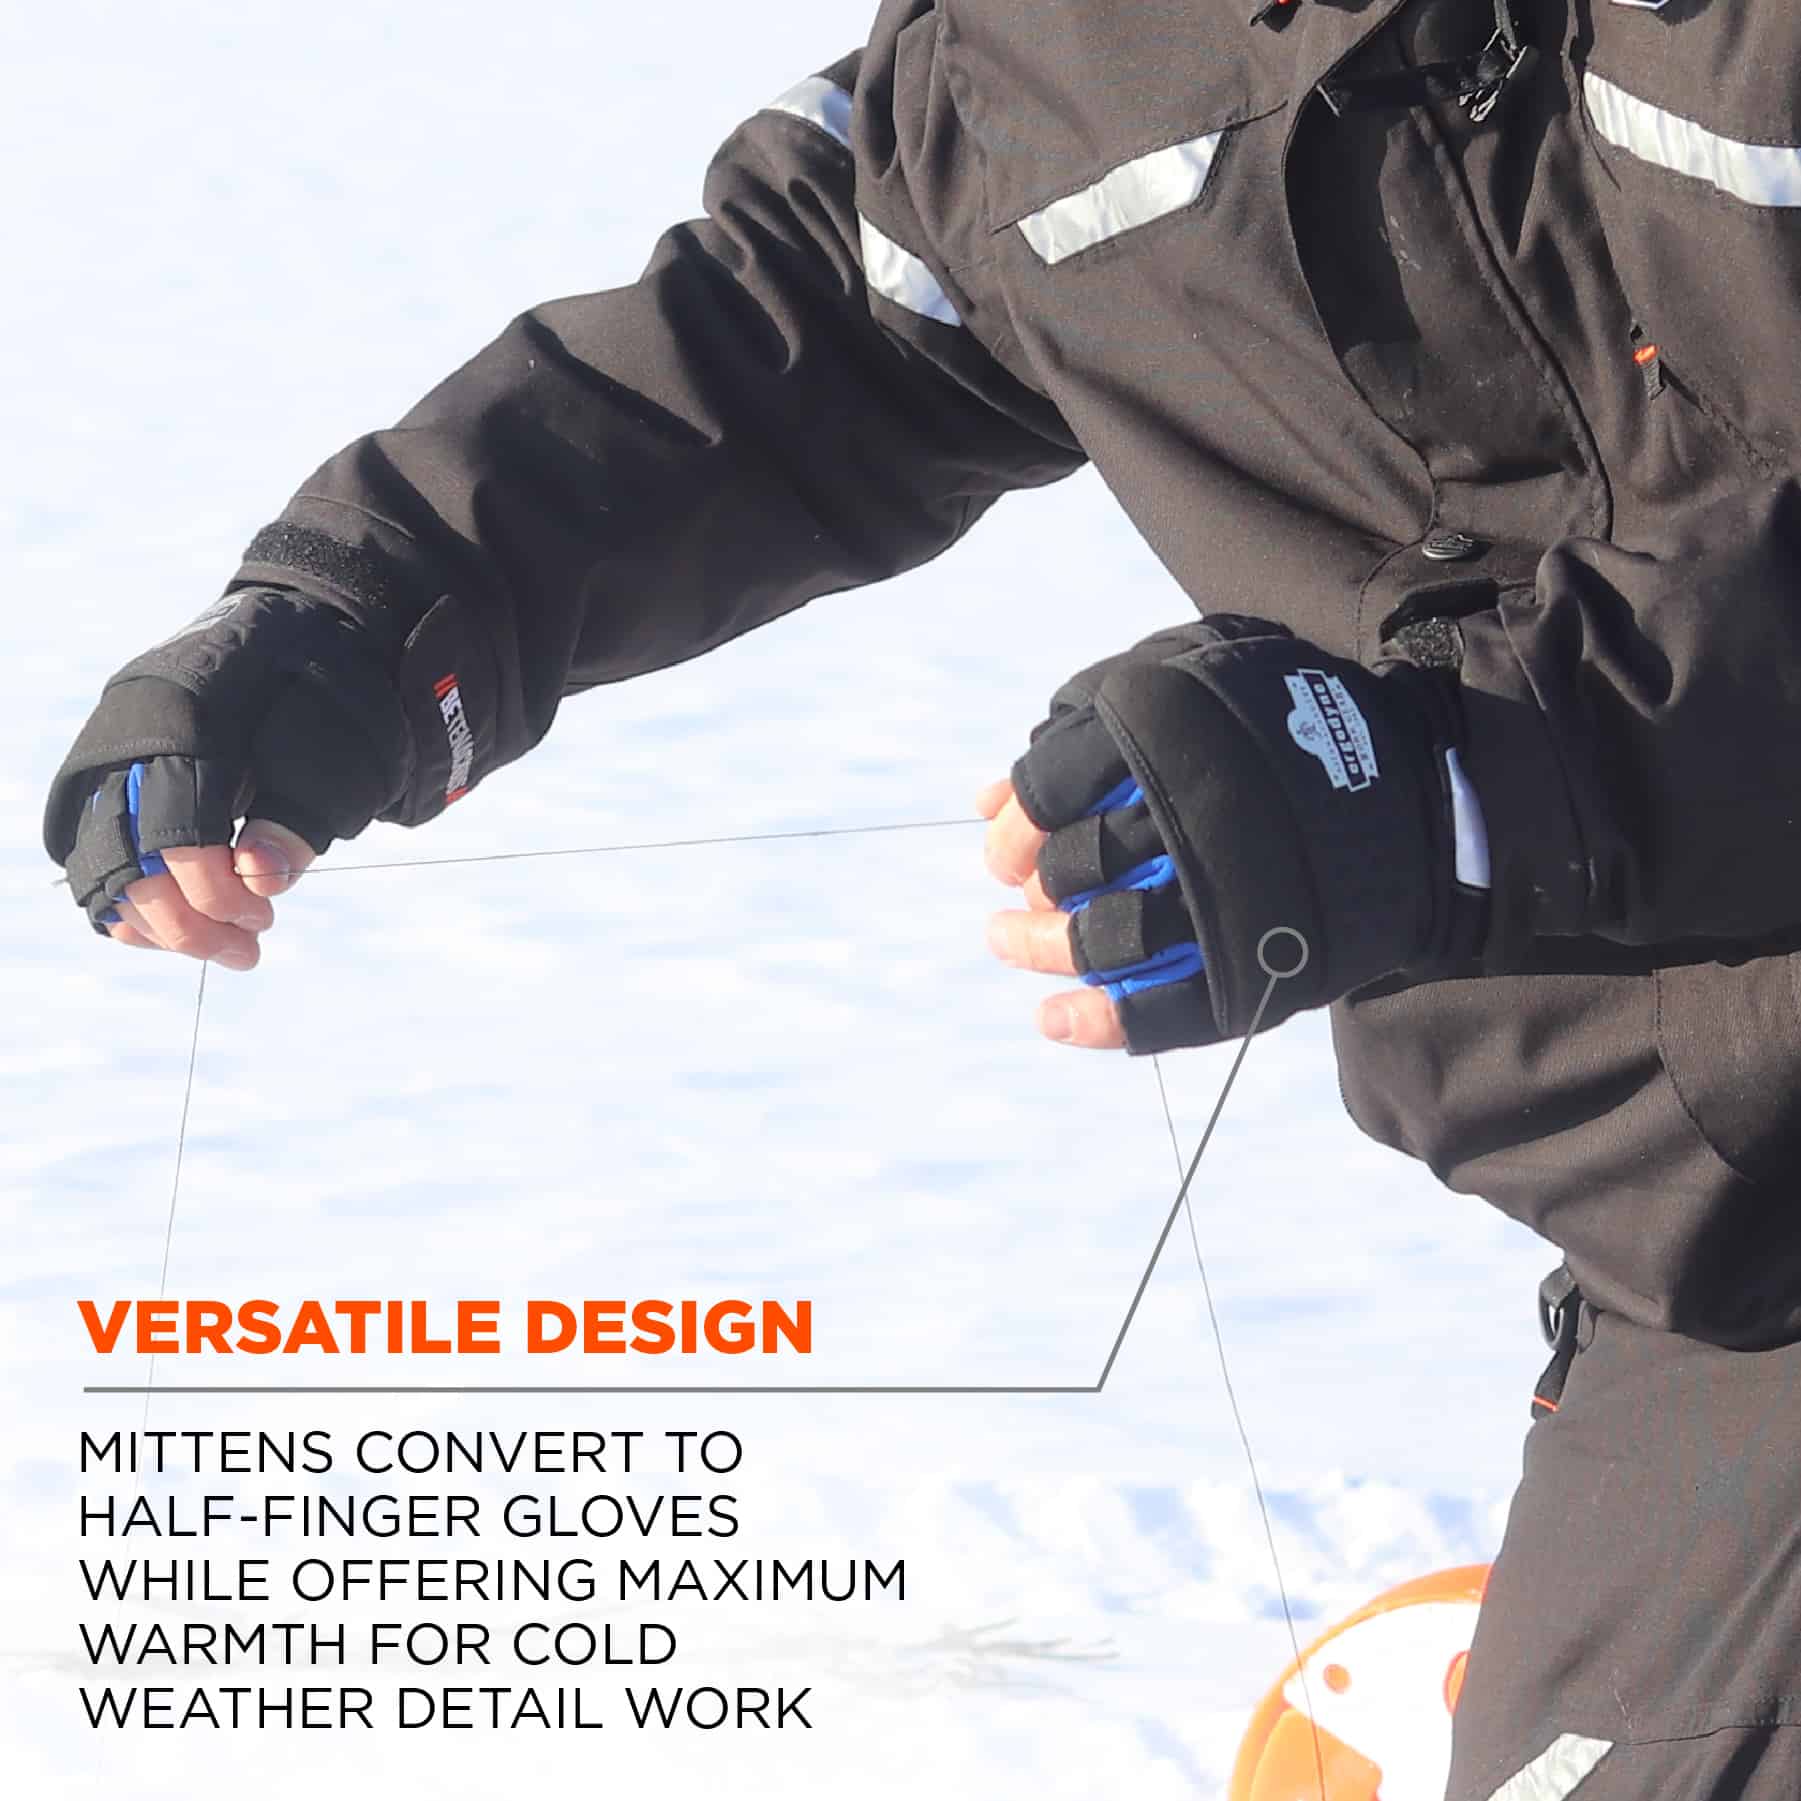 https://www.ergodyne.com/sites/default/files/product-images/17342-816-thermal-fingerless-winter-work-gloves-black-versatile-design.jpg